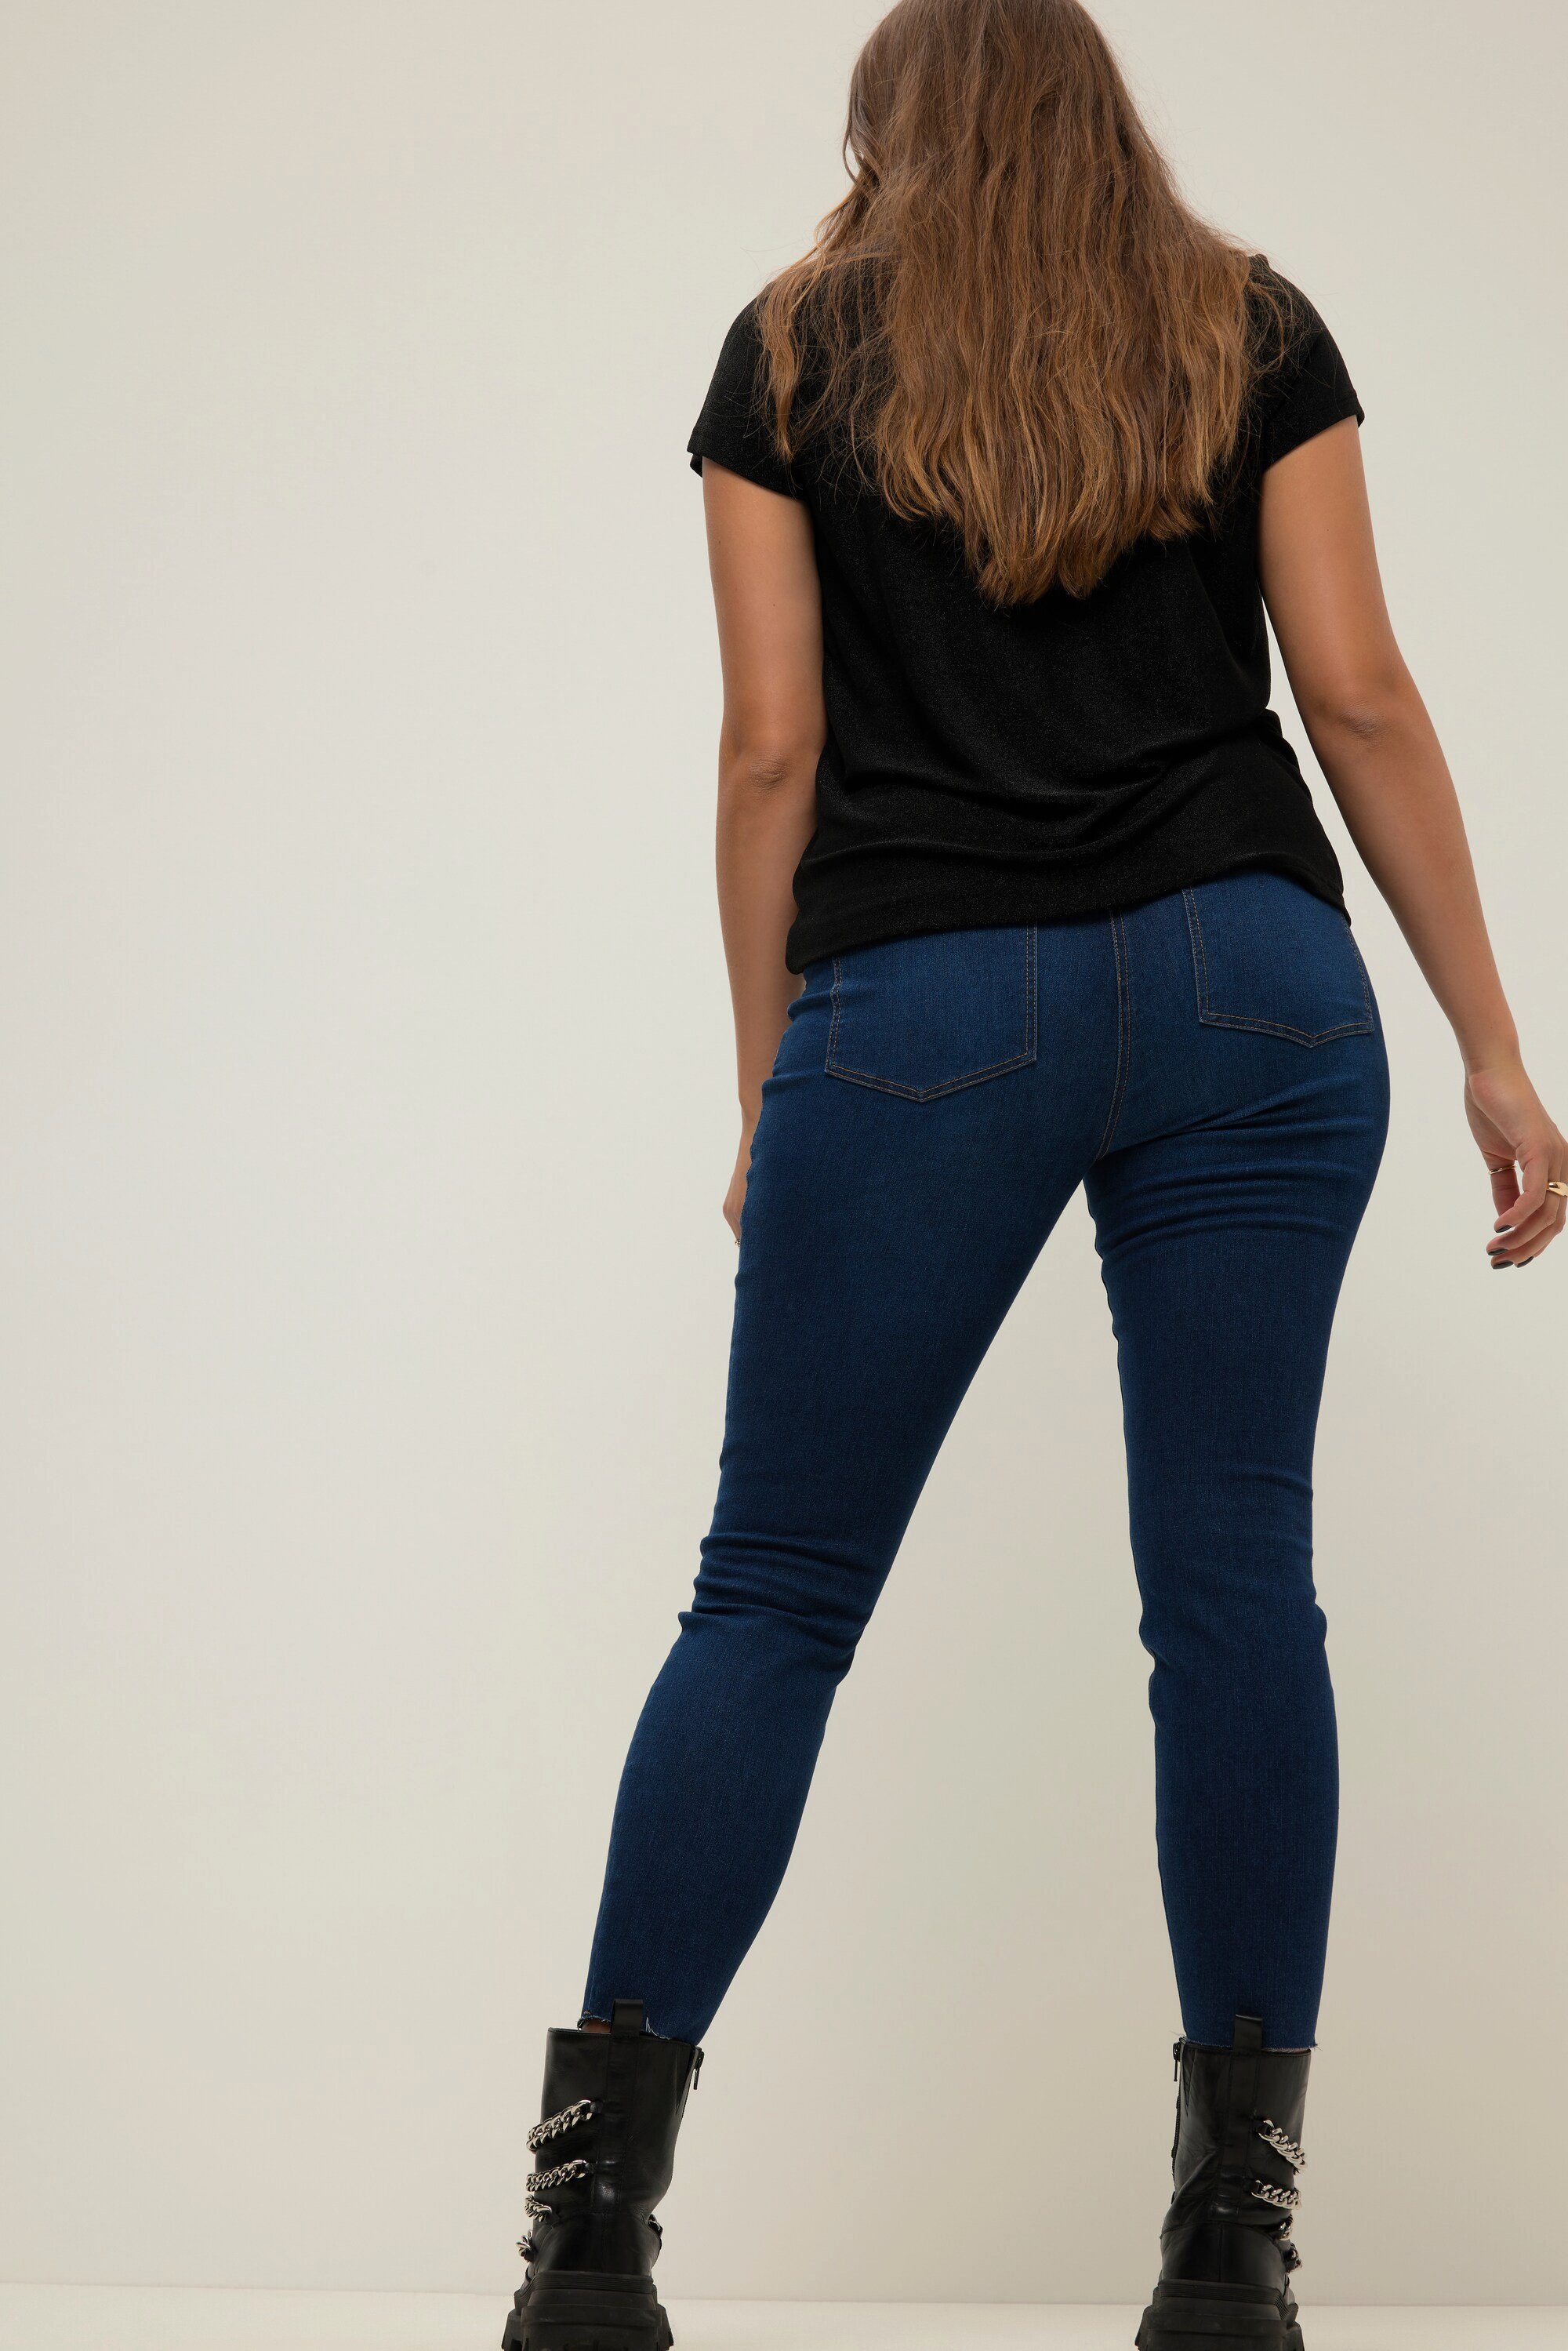 Skinny-Jeans 5-Pocket Untold Studio Elastikbund Regular-fit-Jeans Saum cutted